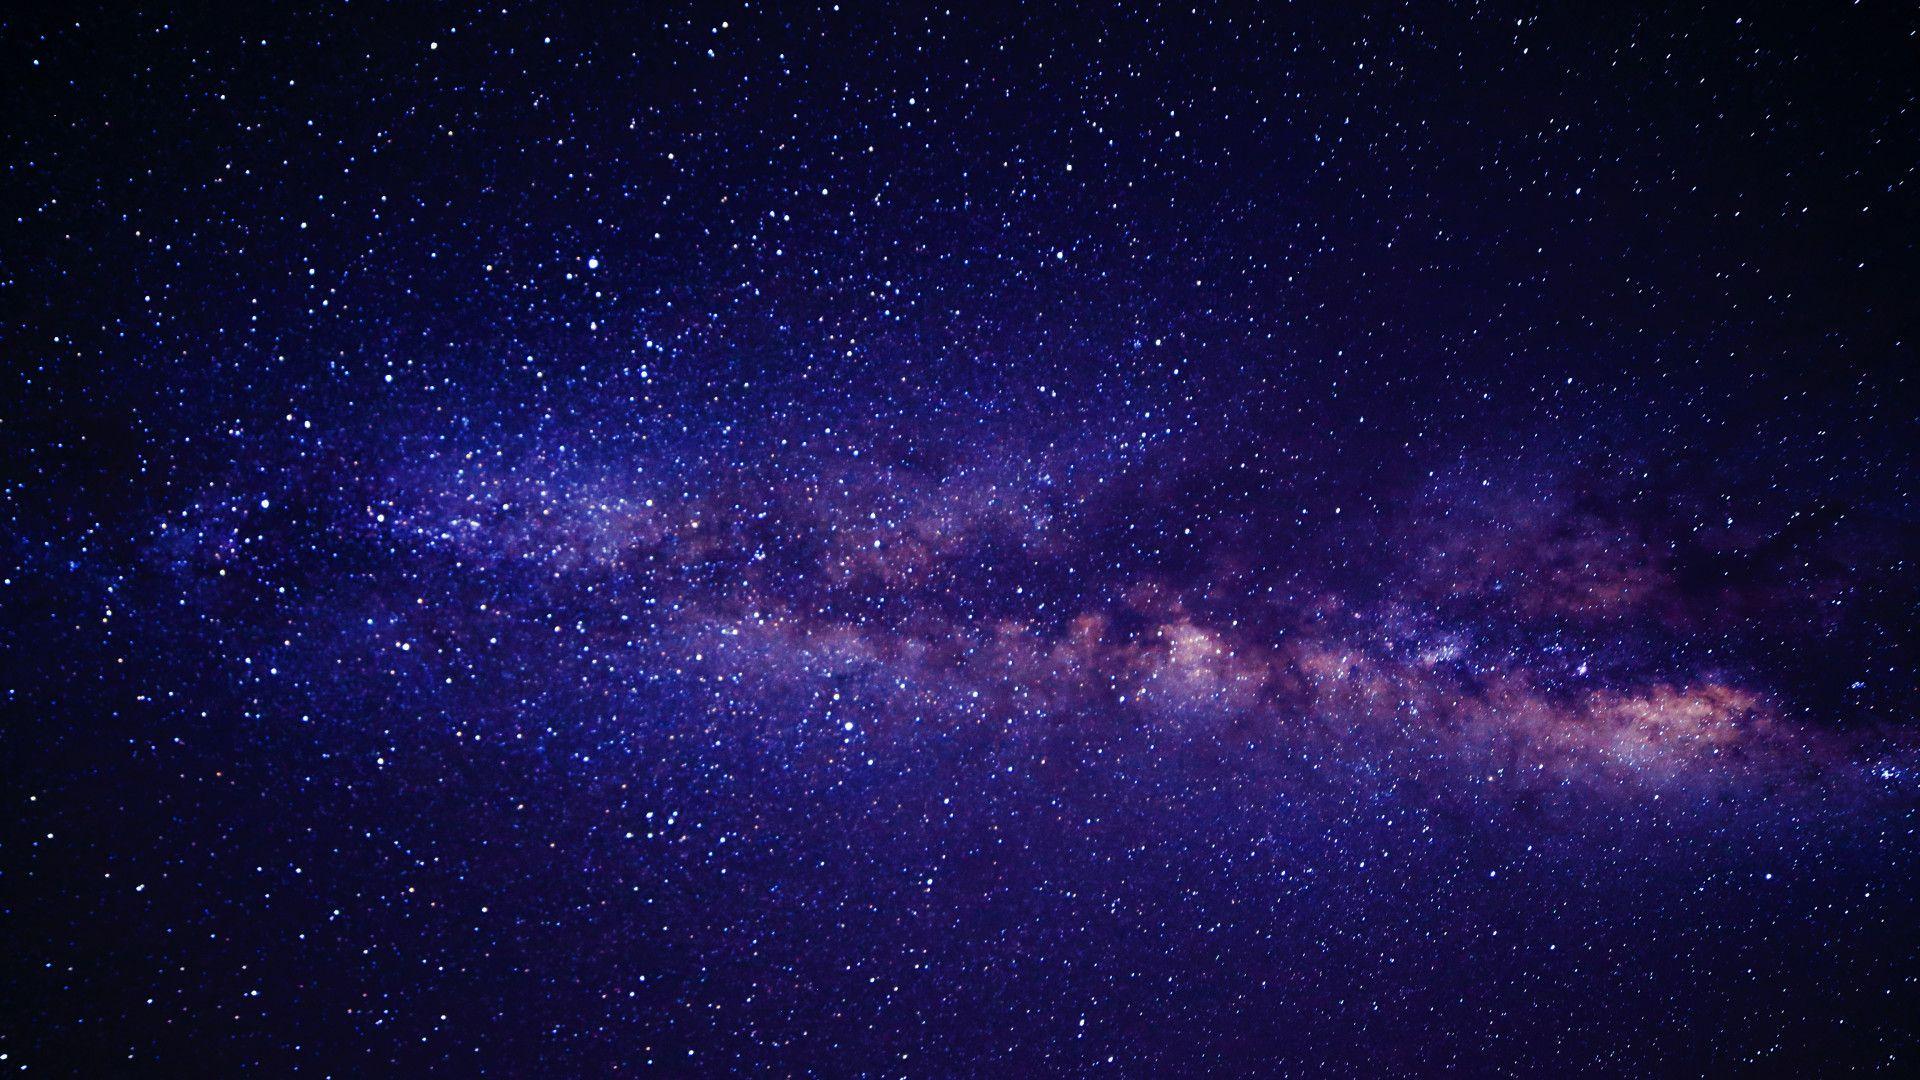 Galaxy HD - chứng kiến vẻ đẹp tuyệt vời của Đại Ngân Hà trên màn hình lớn với độ phân giải cao. Bạn sẽ được thưởng thức những bức ảnh đẹp như mơ của vũ trụ, chiêm ngưỡng những hệ thống tinh tú tuyệt đẹp và cảm nhận được nhịp đập rực rỡ của vũ trụ.